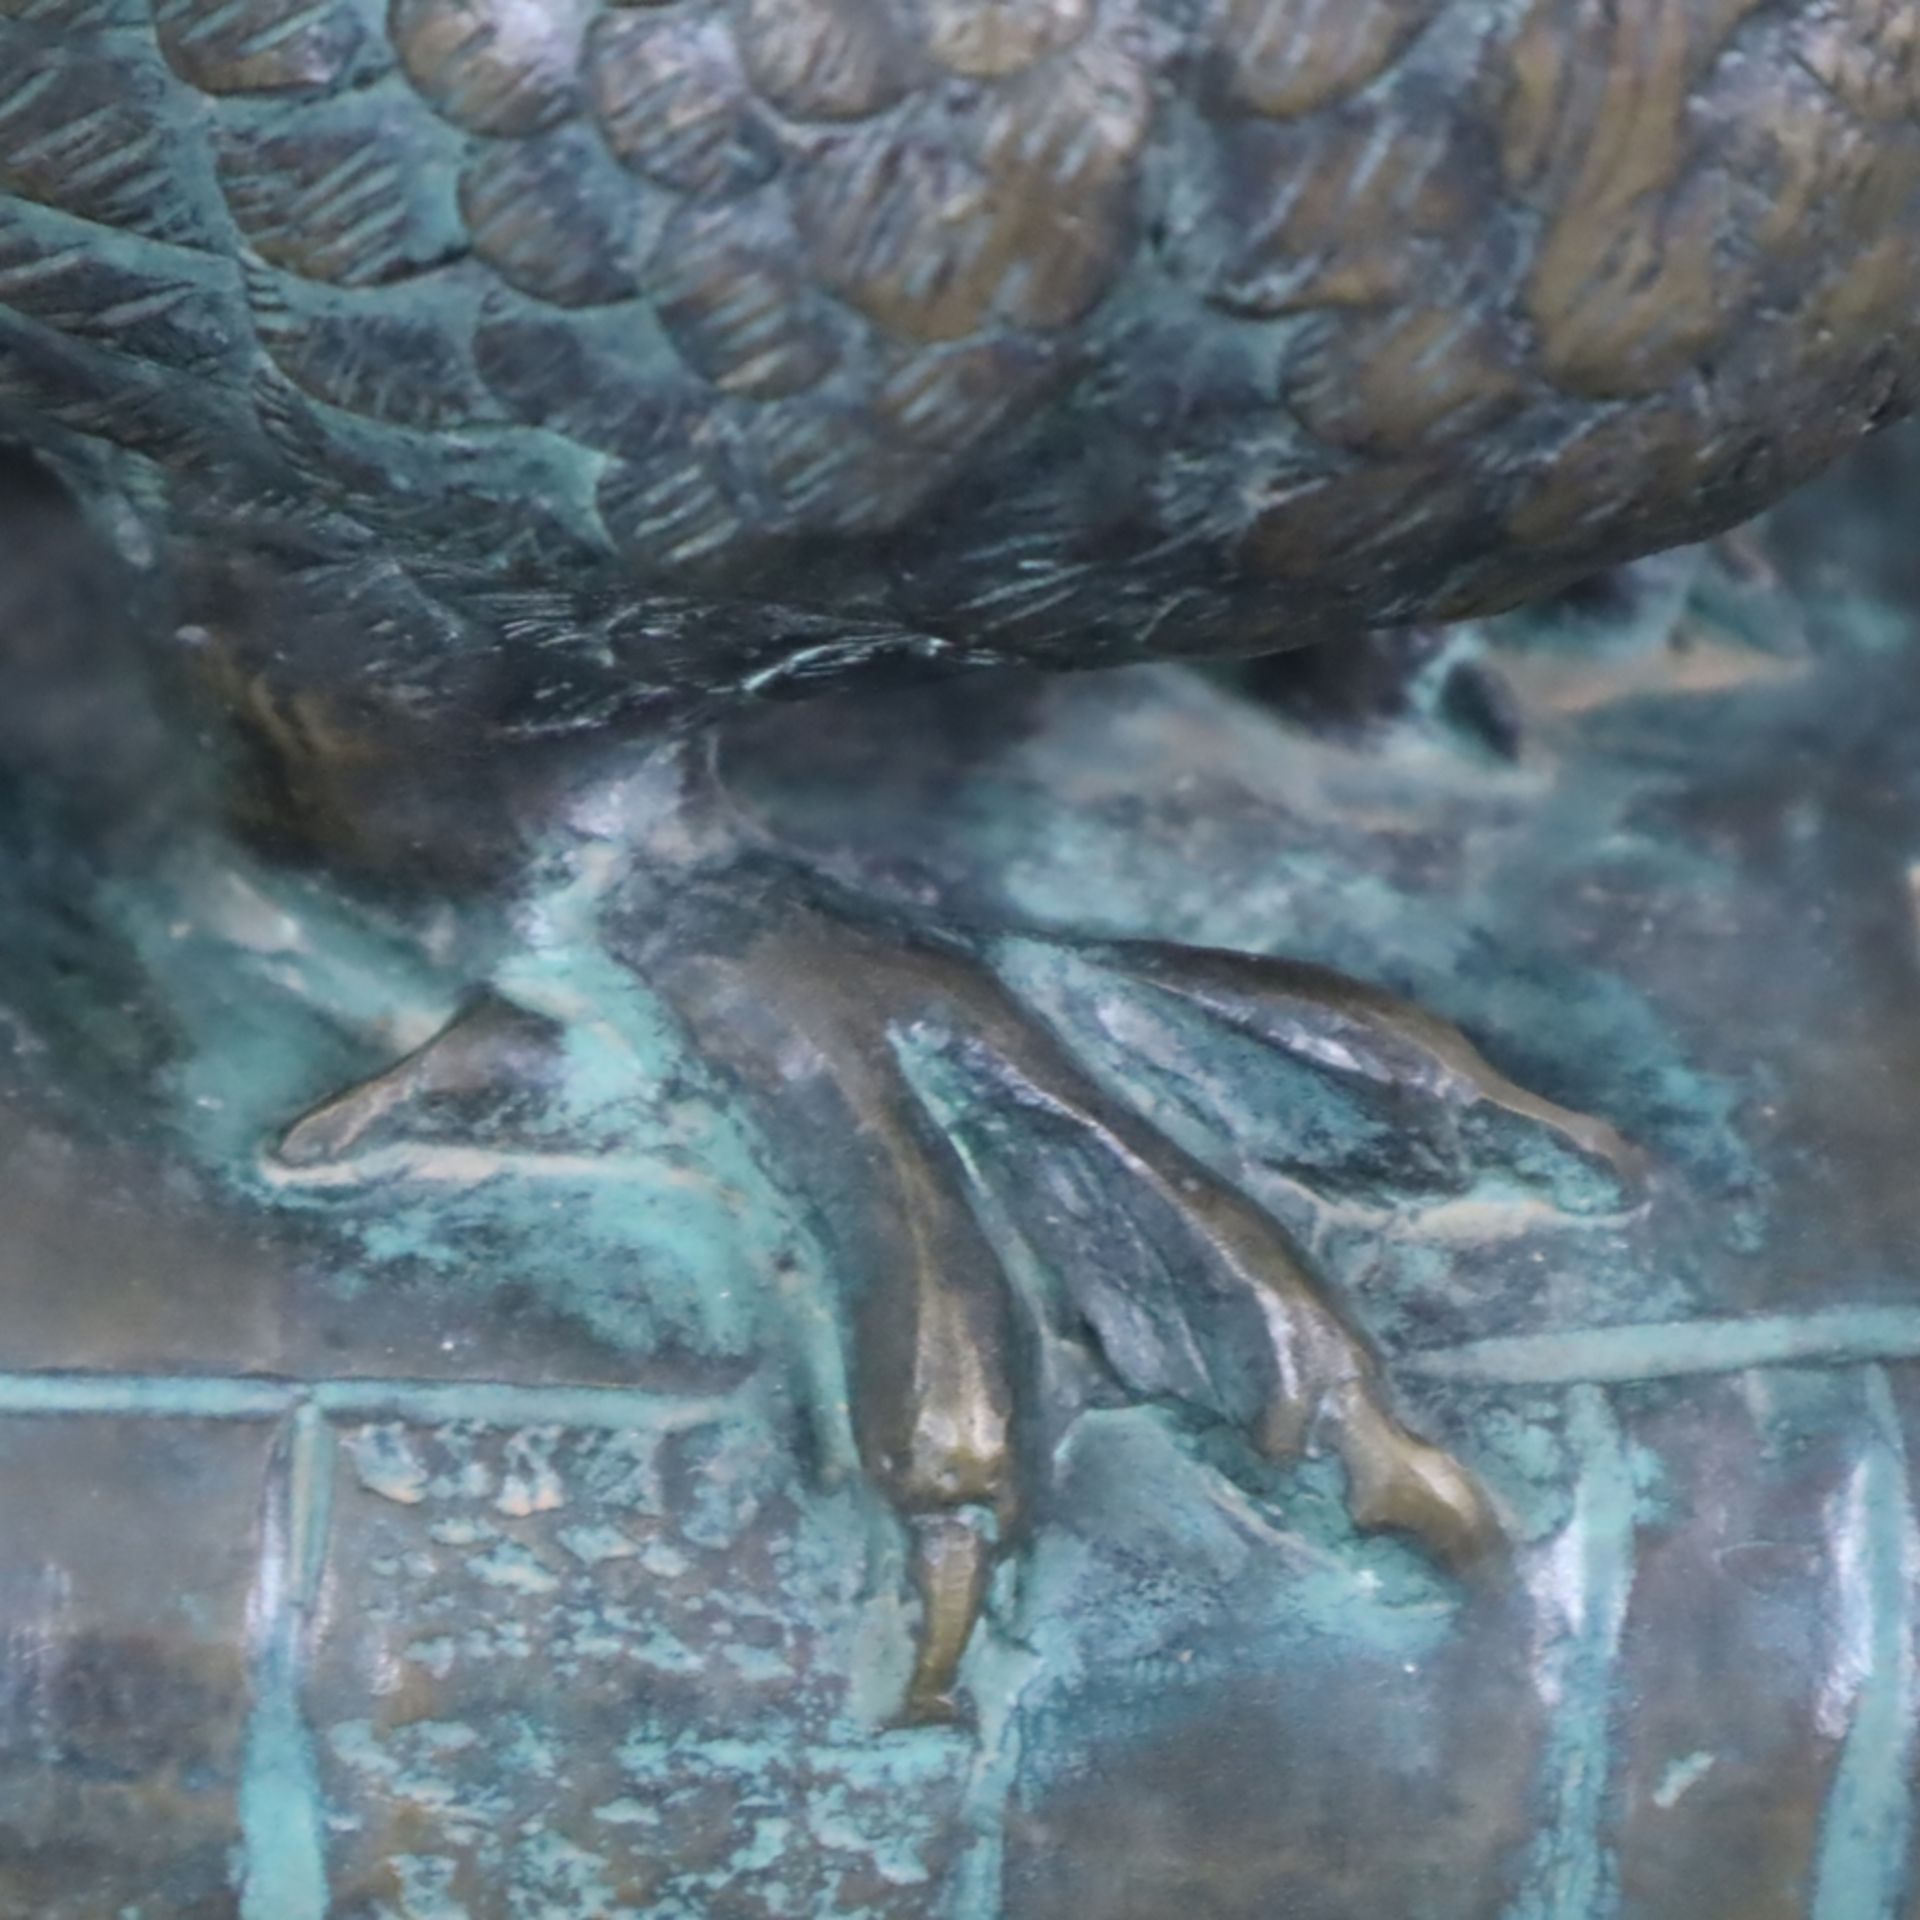 Büchereule - Bronze, patiniert, auf einem geschlossenen Buch sitzende kleine Eule als allegorische  - Bild 4 aus 7